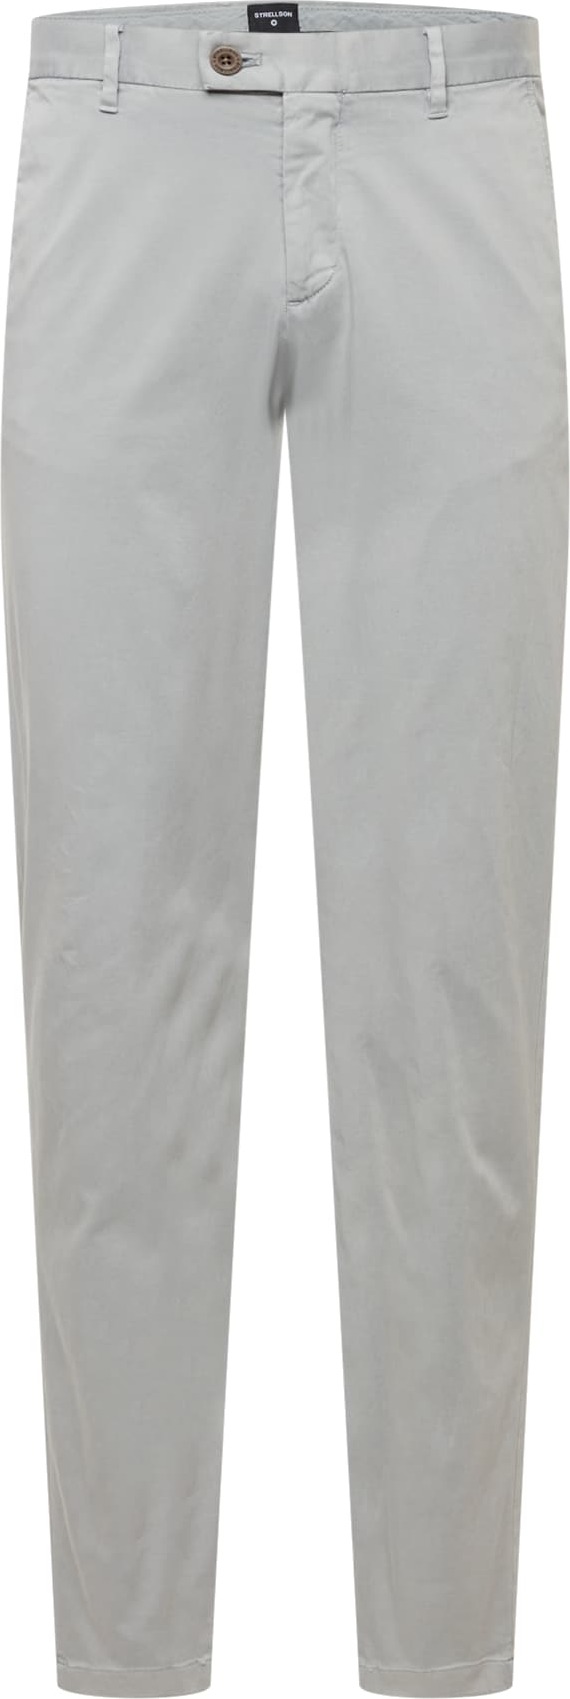 STRELLSON Chino kalhoty 'Code' stříbrně šedá